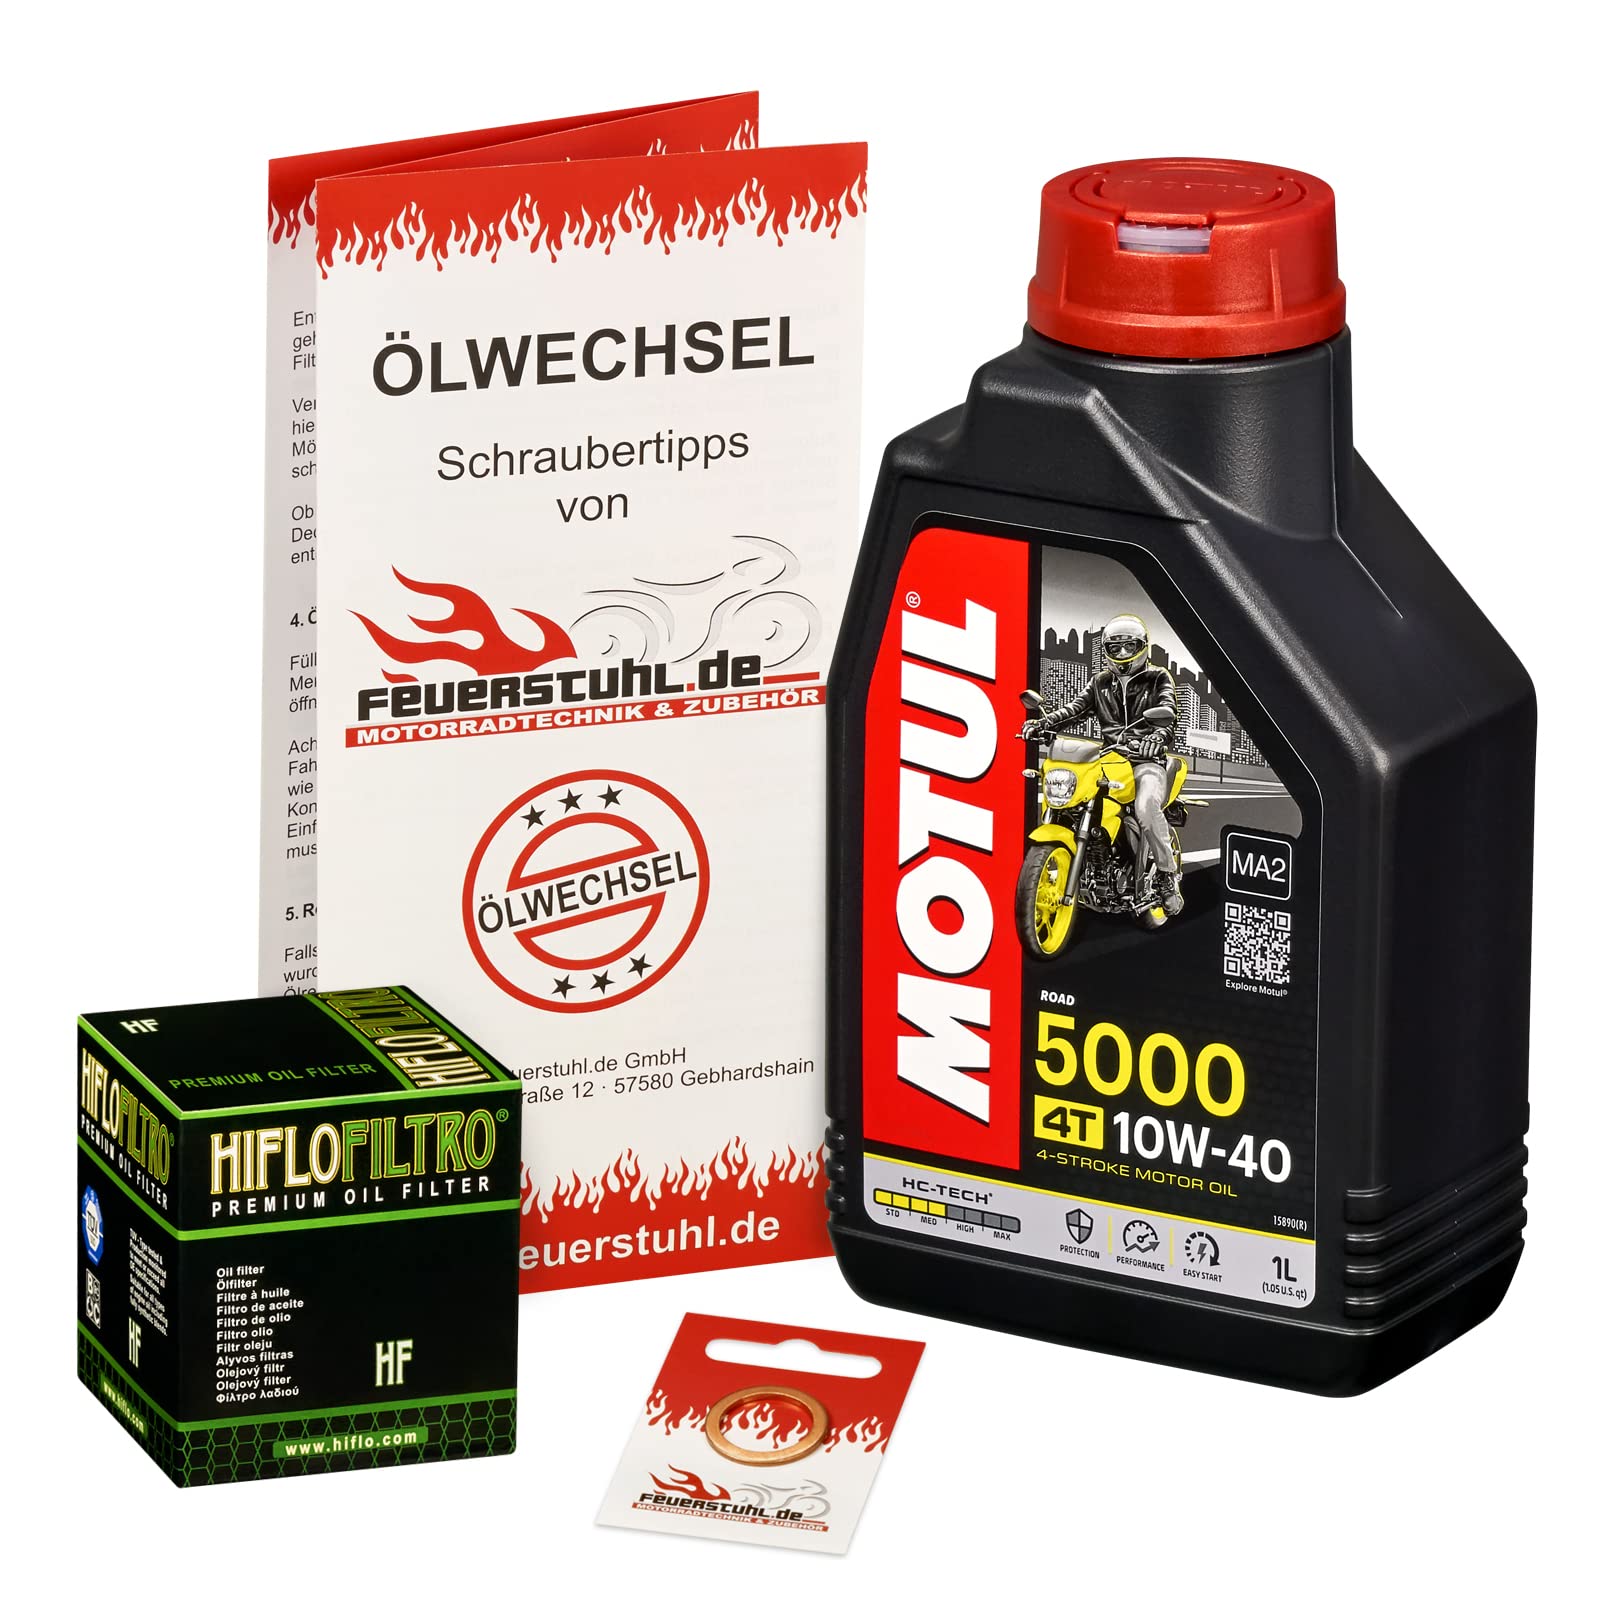 Motul 10W-40 Öl + HiFlo Ölfilter für Suzuki GN 125, 94-99, NF41A - Ölwechselset inkl. Motoröl, Filter, Dichtring von Feuerstuhl.de GmbH